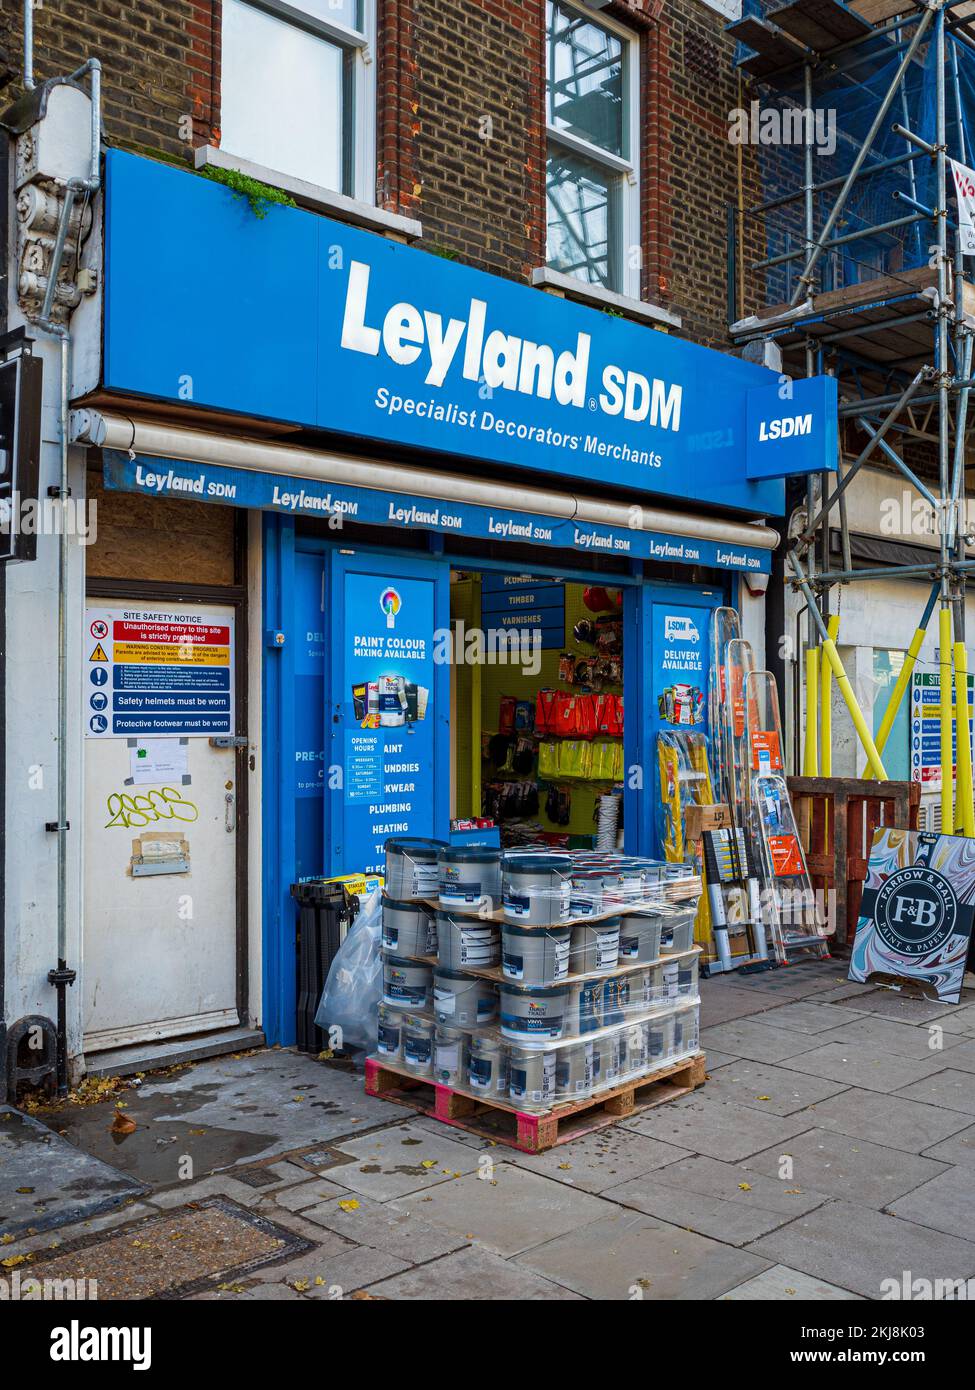 Leyland SDM DIY- und Dekorationsgeschäft im Zentrum von London. Leyland Spezialist Dekorateure Händler Shop in London. Stockfoto